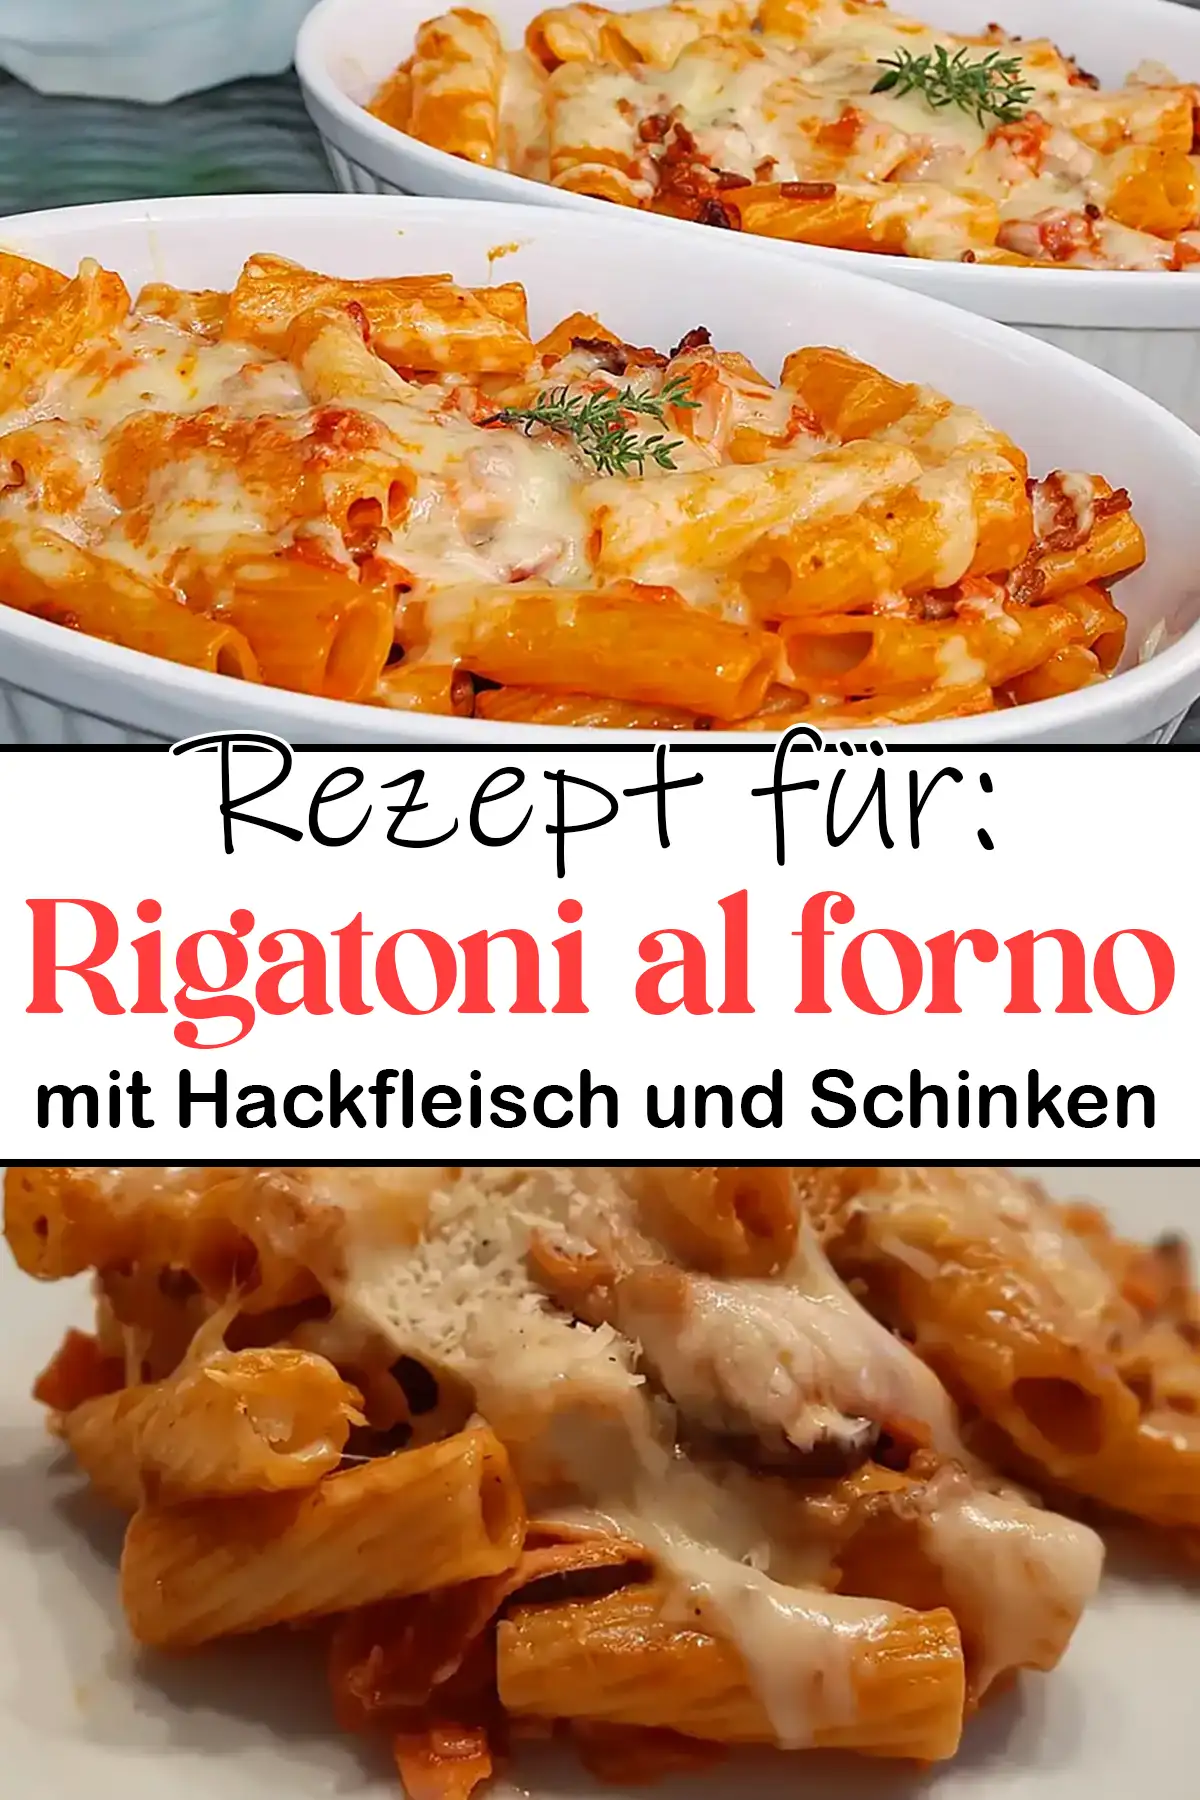 Rigatoni al forno Rezept mit Hackfleisch und Schinken